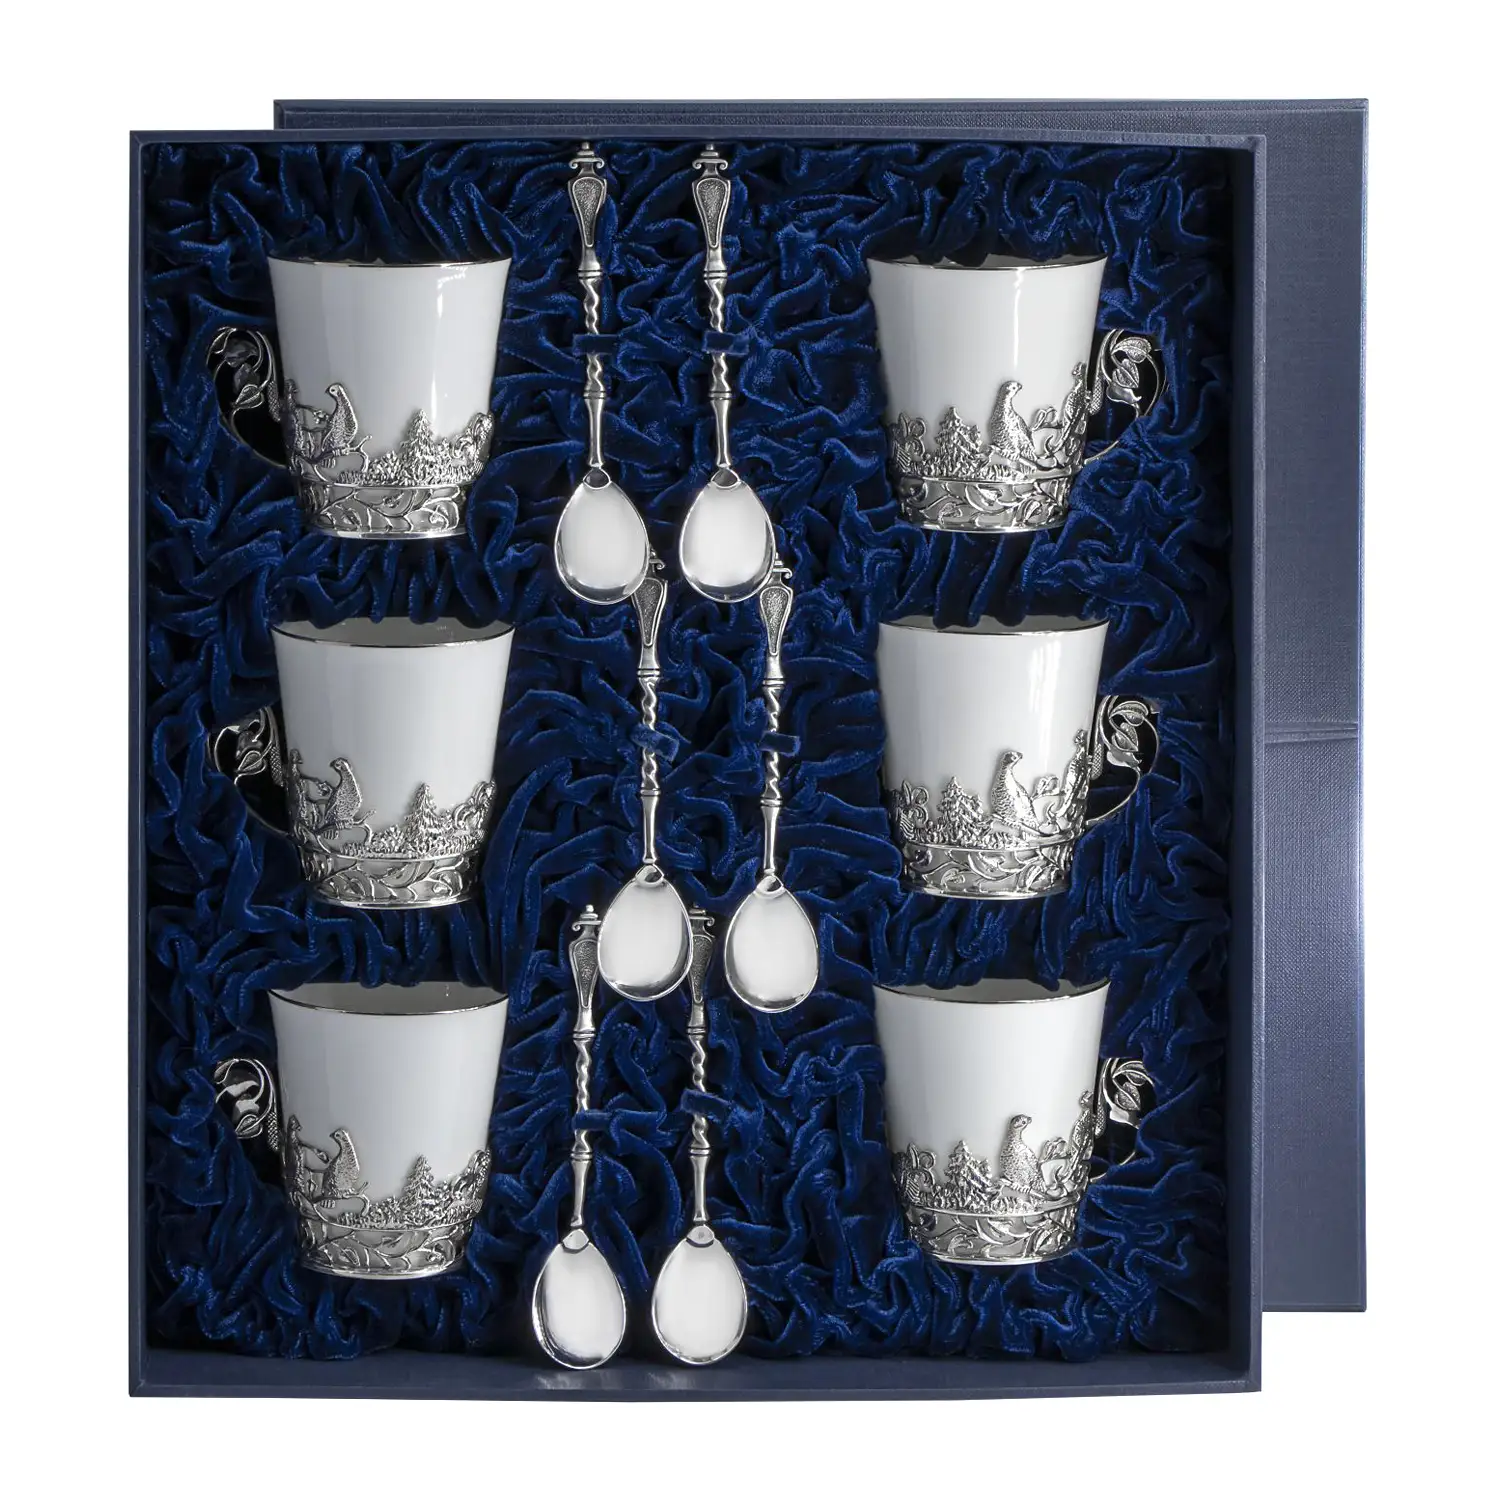 Набор чайных чашек Тетерев: ложка, чашка (Серебро 925) набор чайных чашек витая ложка чашка серебро 925